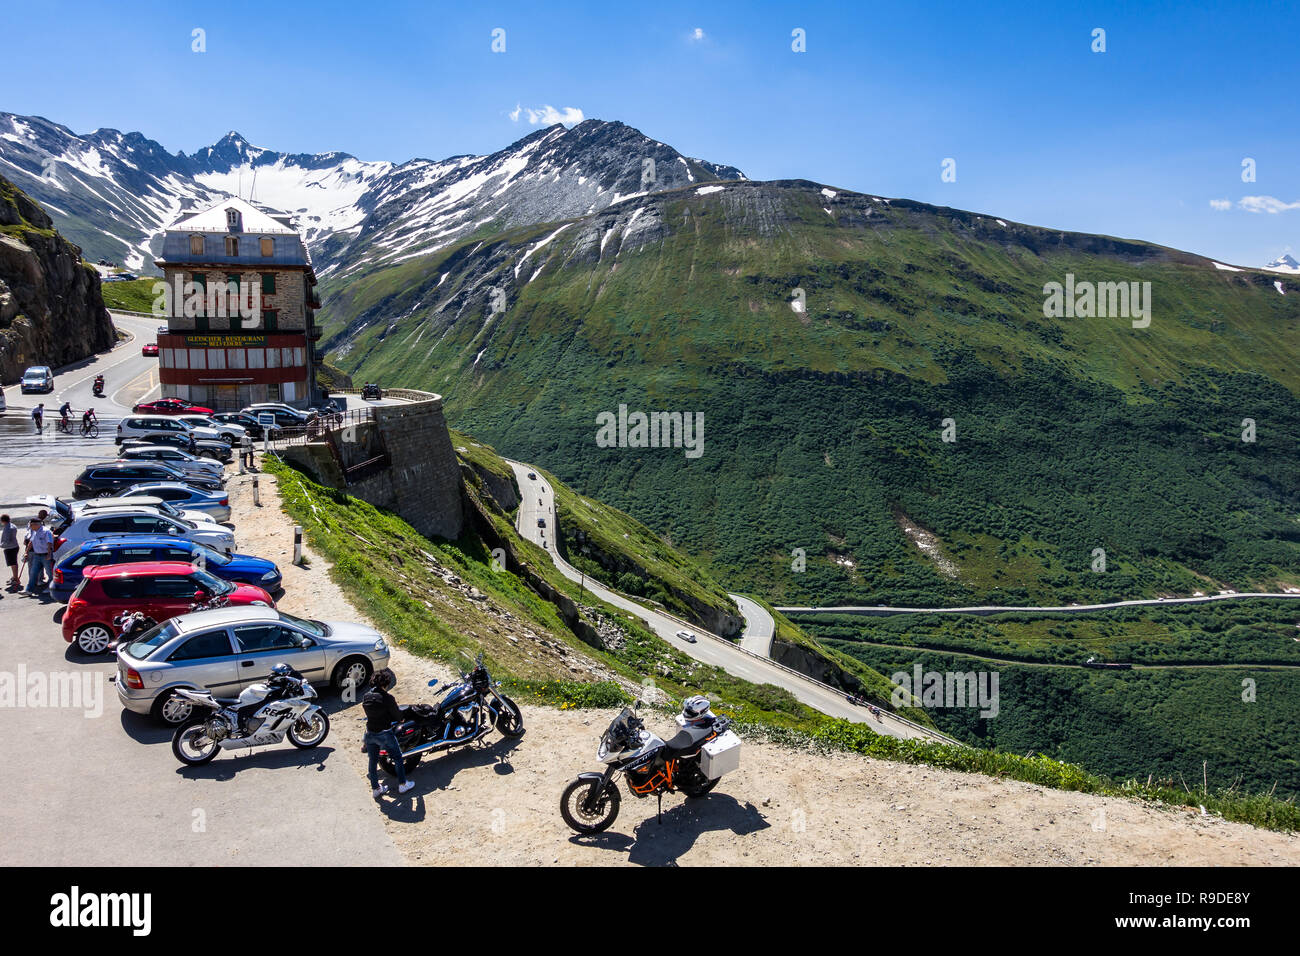 Motocicli e Autoveicoli parcheggiati in Hotel Belvedere sulla strada della Furka Pass, vicino ghiacciaio del Rodano. Vallese, Svizzera, Luglio 2018 Foto Stock